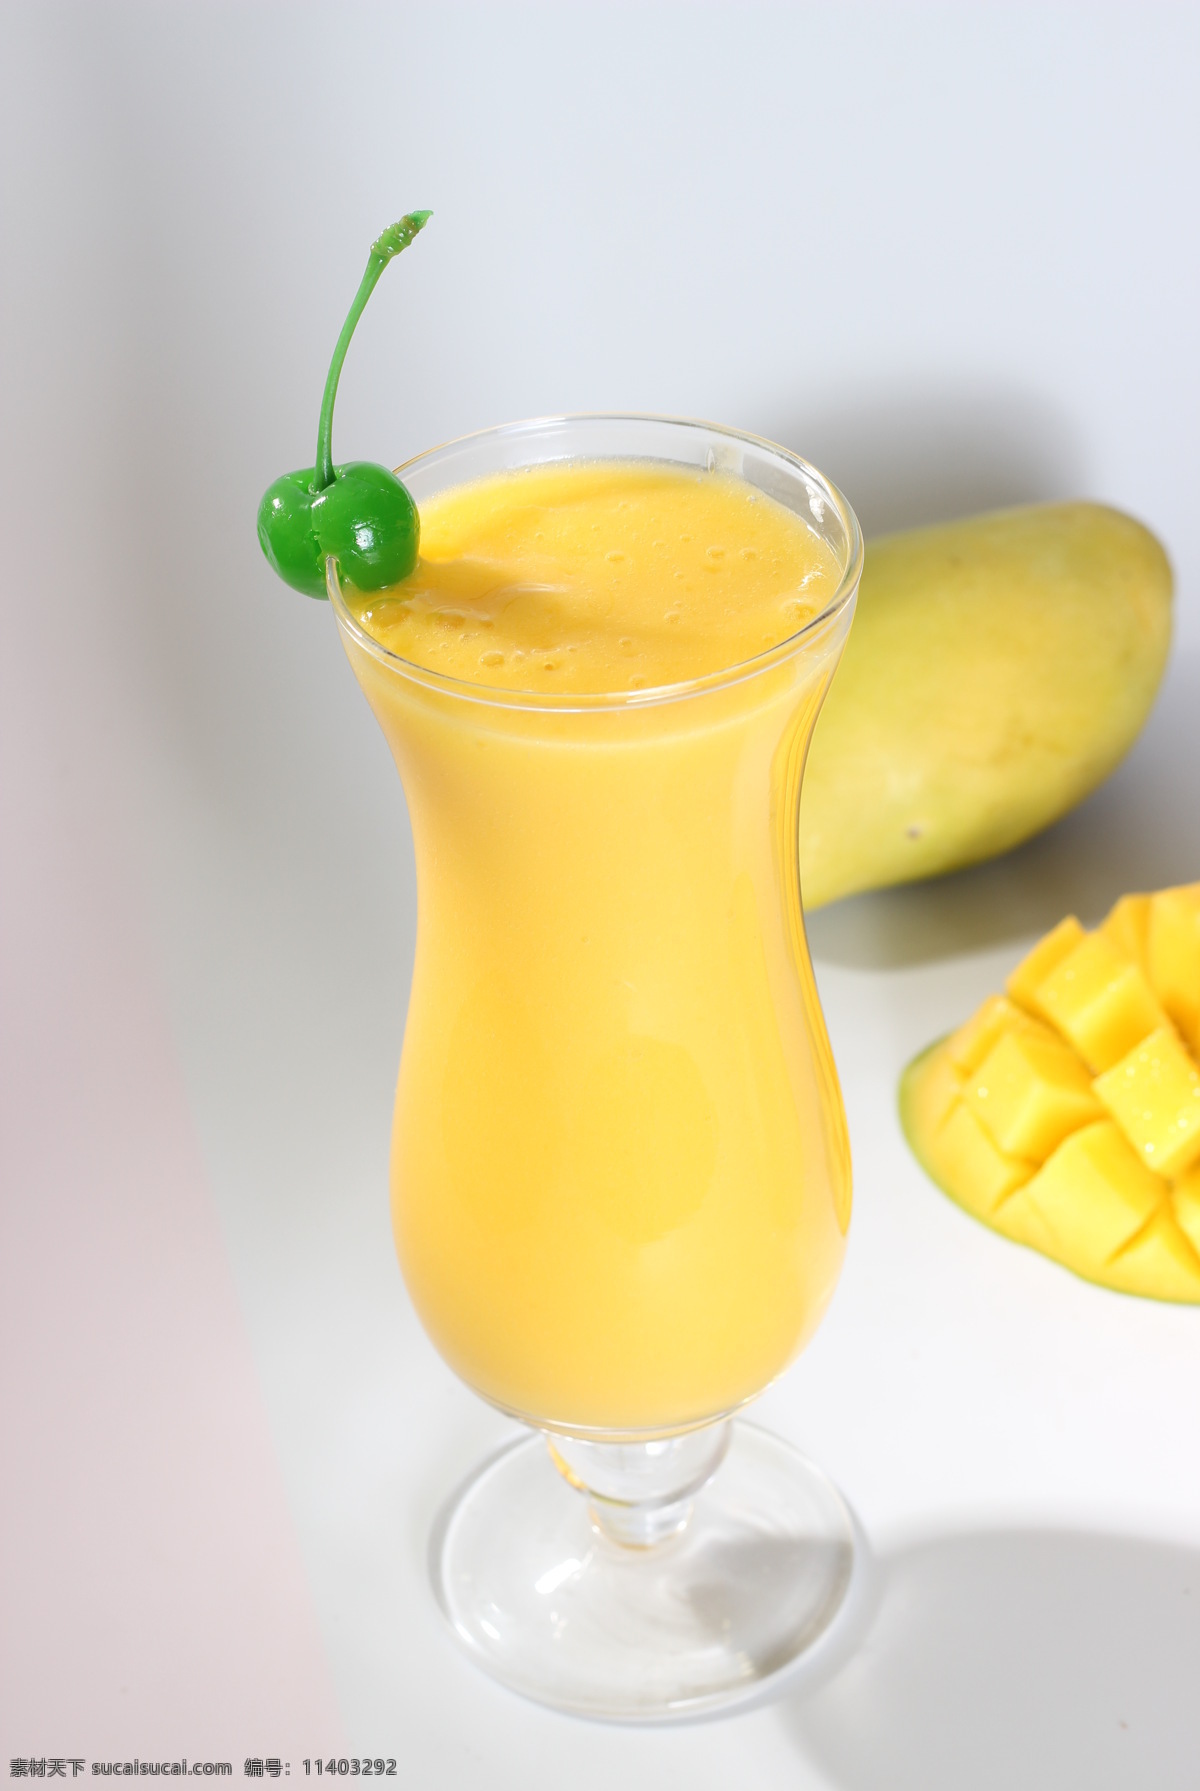 果汁 芒果汁 芒果 饮品 鲜果汁 饮料 甜品 金芒 水果果汁 餐饮美食 饮料酒水